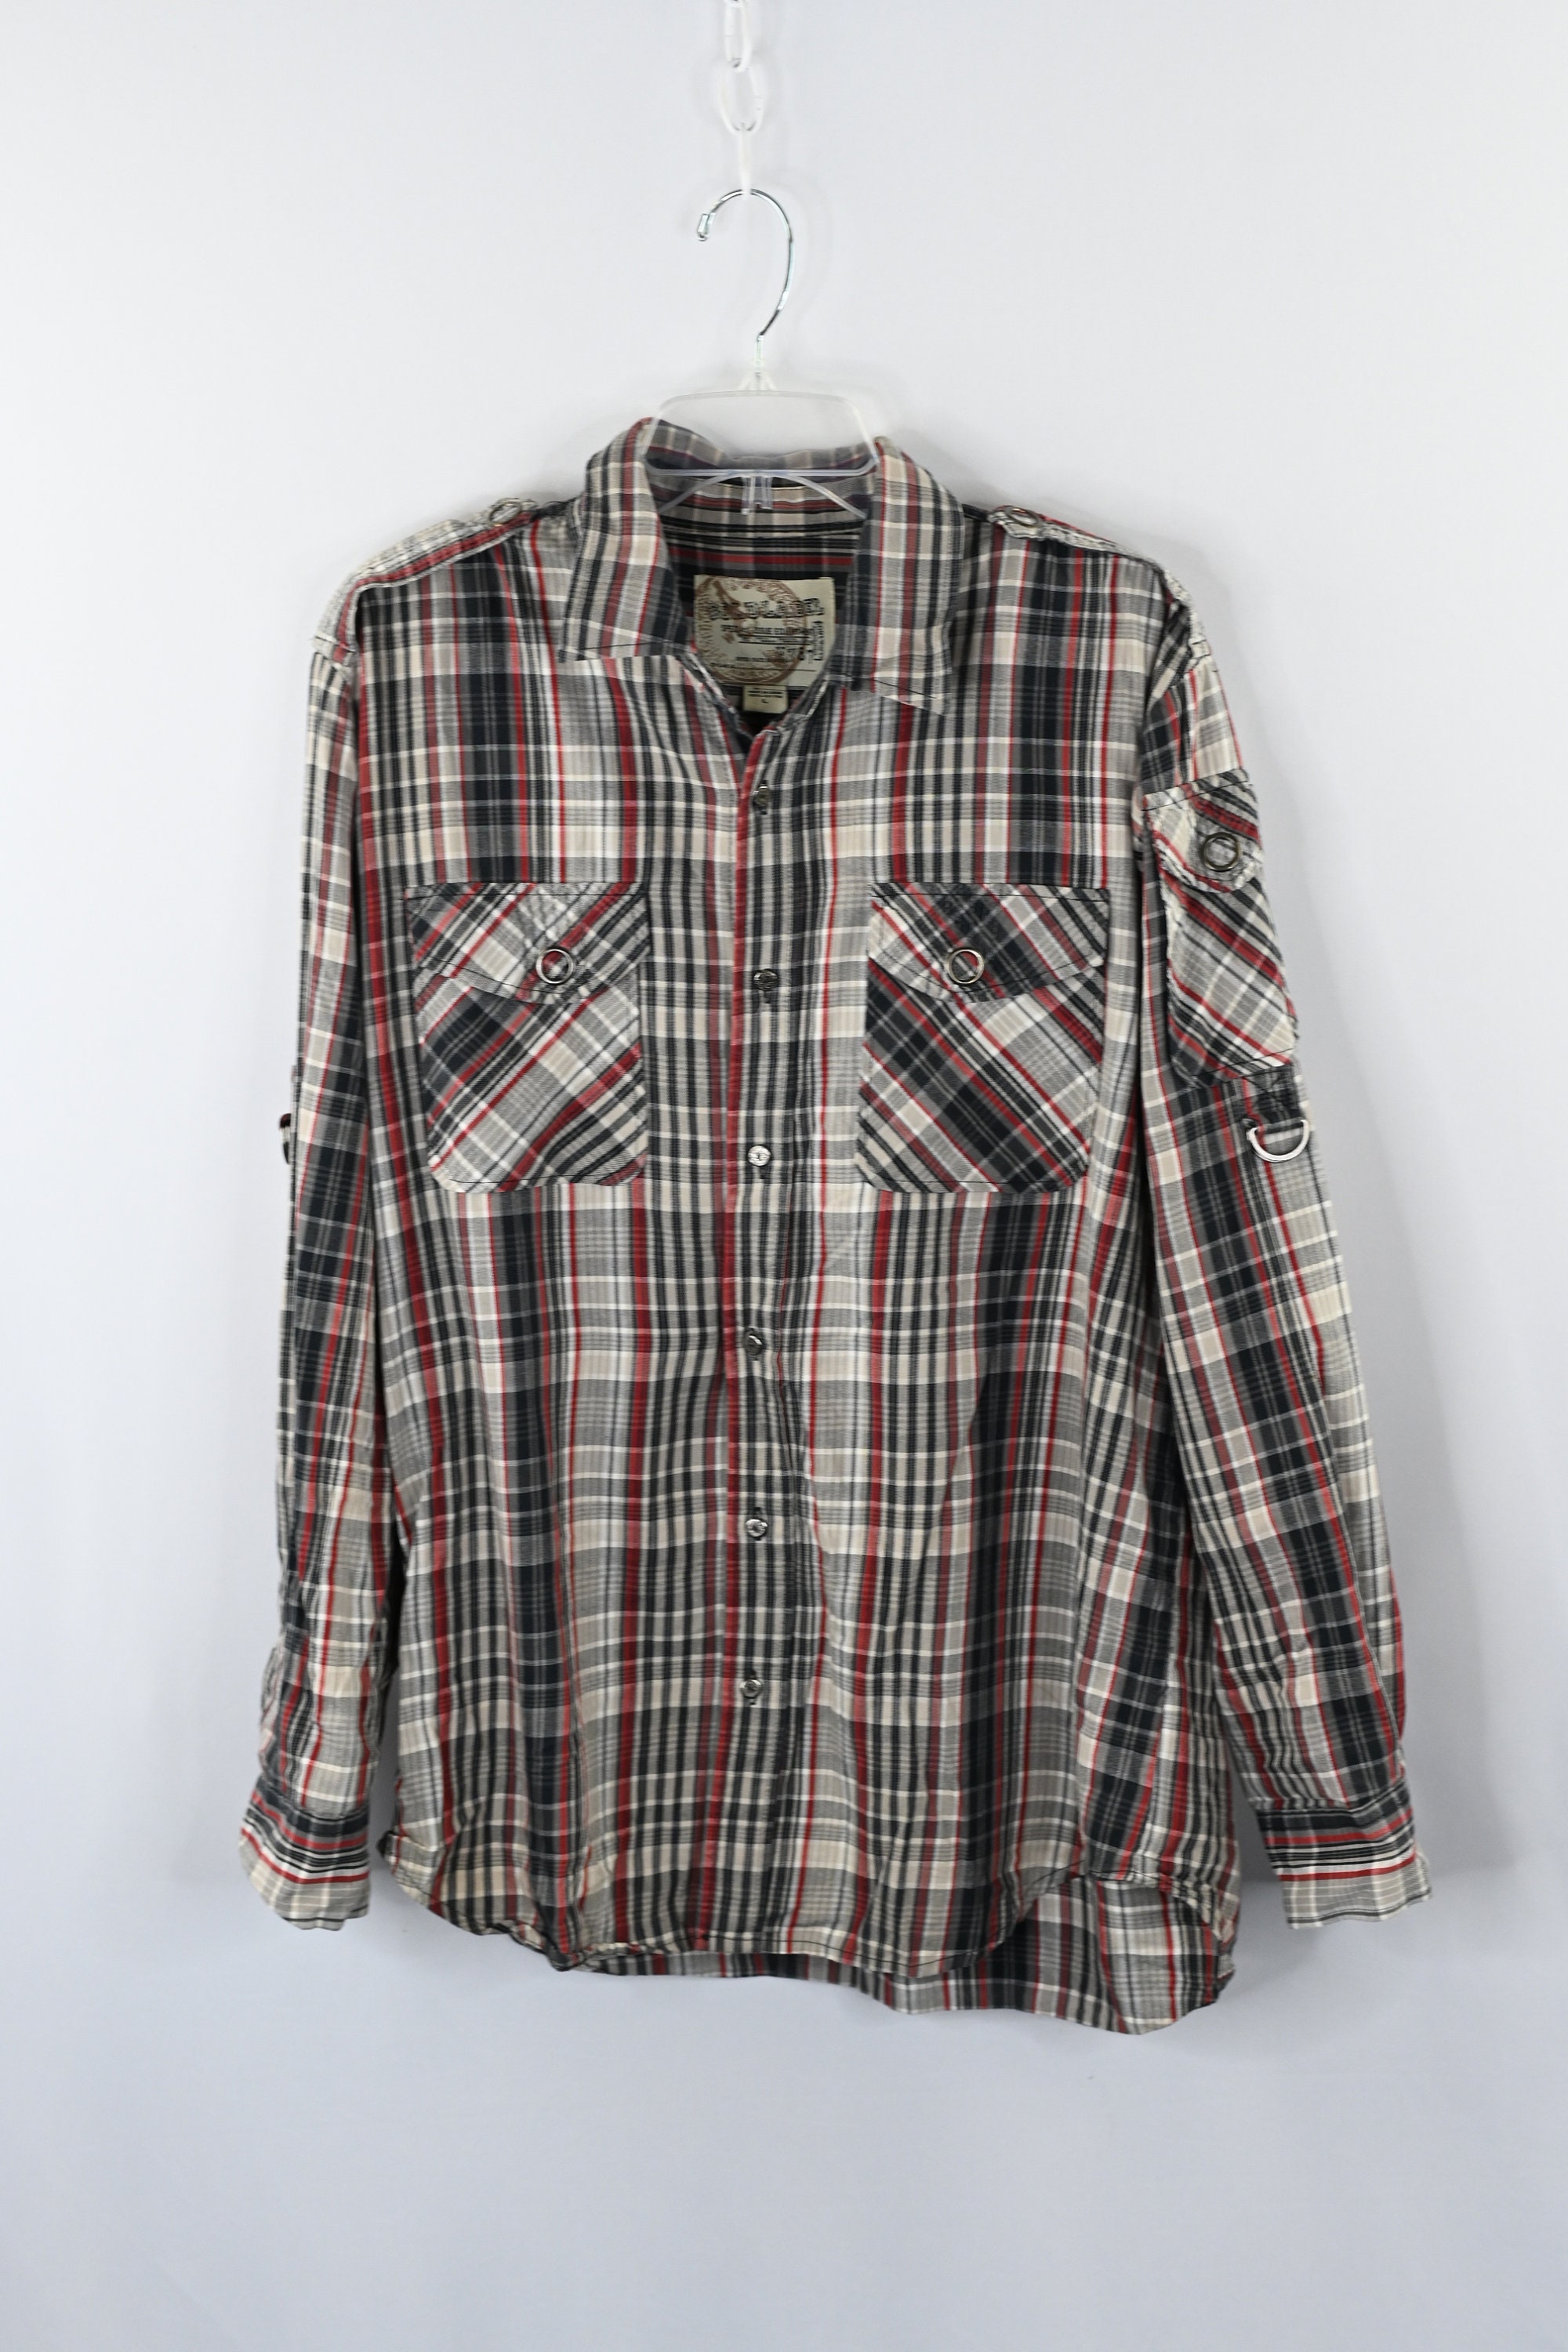 Men's Gray Plaid Flannel Button-Up Shirt Size L | Etsy